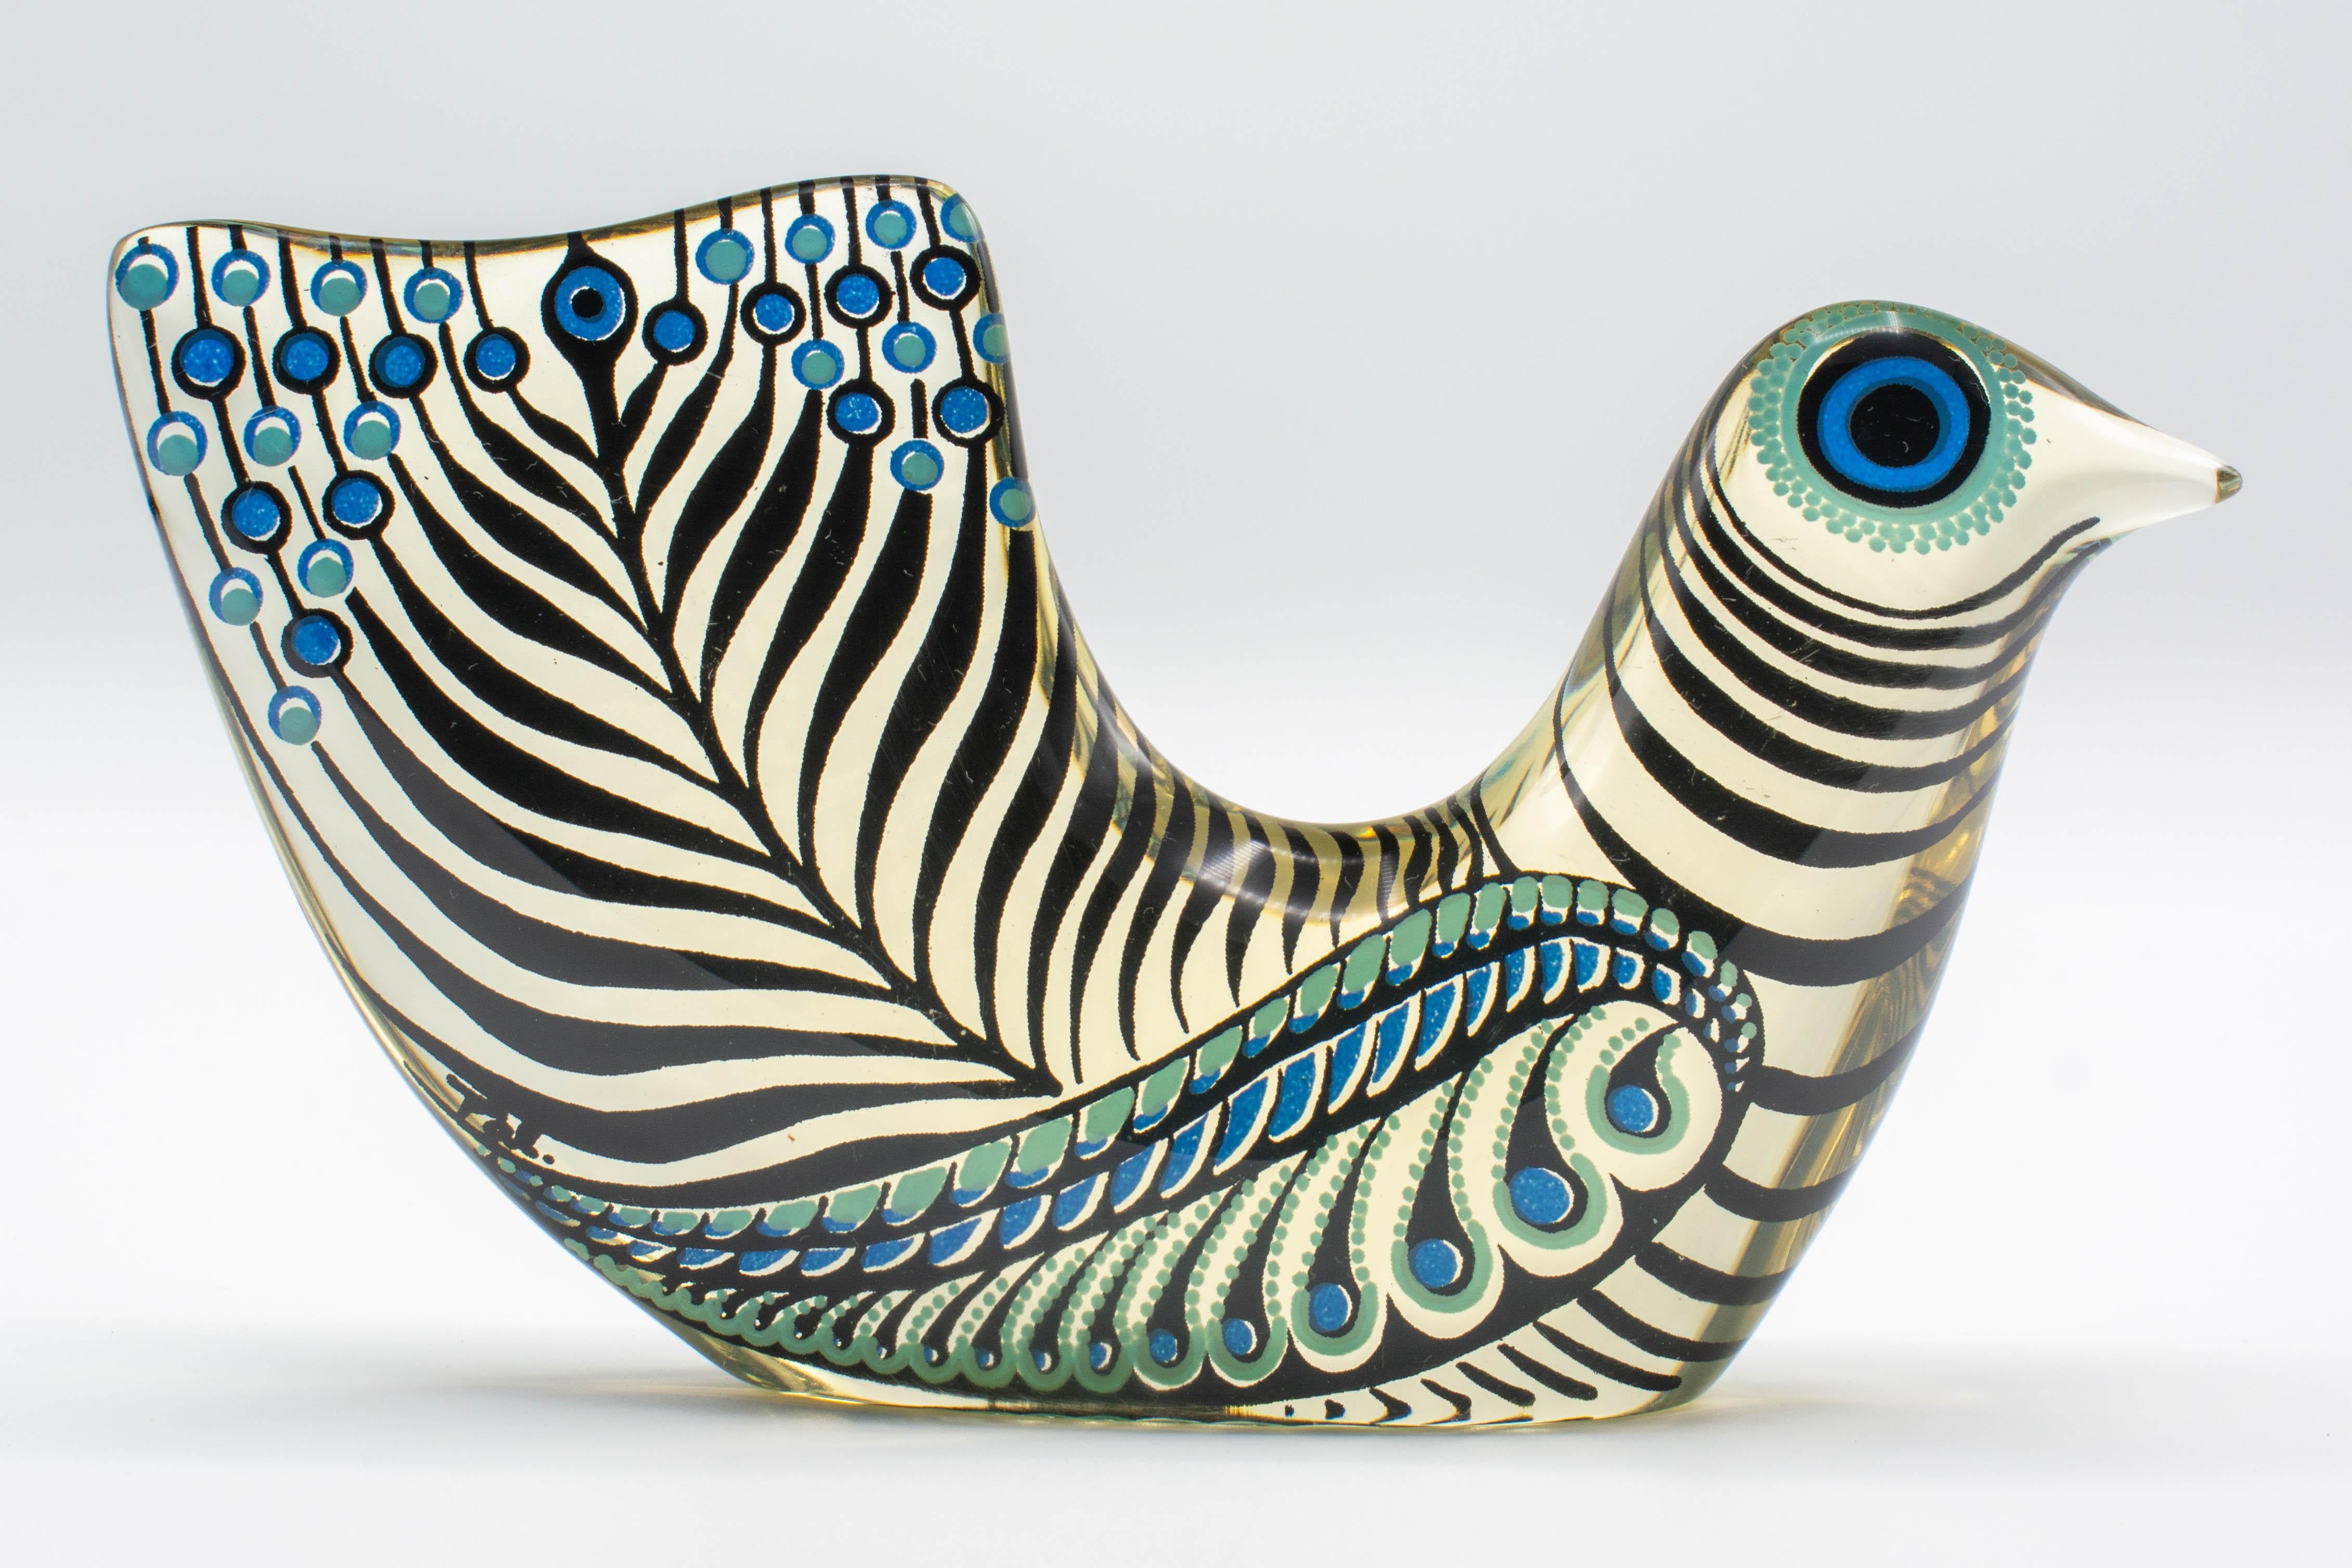 Oiseau en Lucite Op Art bleu, turquoise et noir, datant du milieu du siècle dernier, conçu par Abraham Palatnik. Abraham Artistics (né en 1928) est un artiste et inventeur brésilien dont les innovations incluent l'art kinéchromatique. Fait partie de